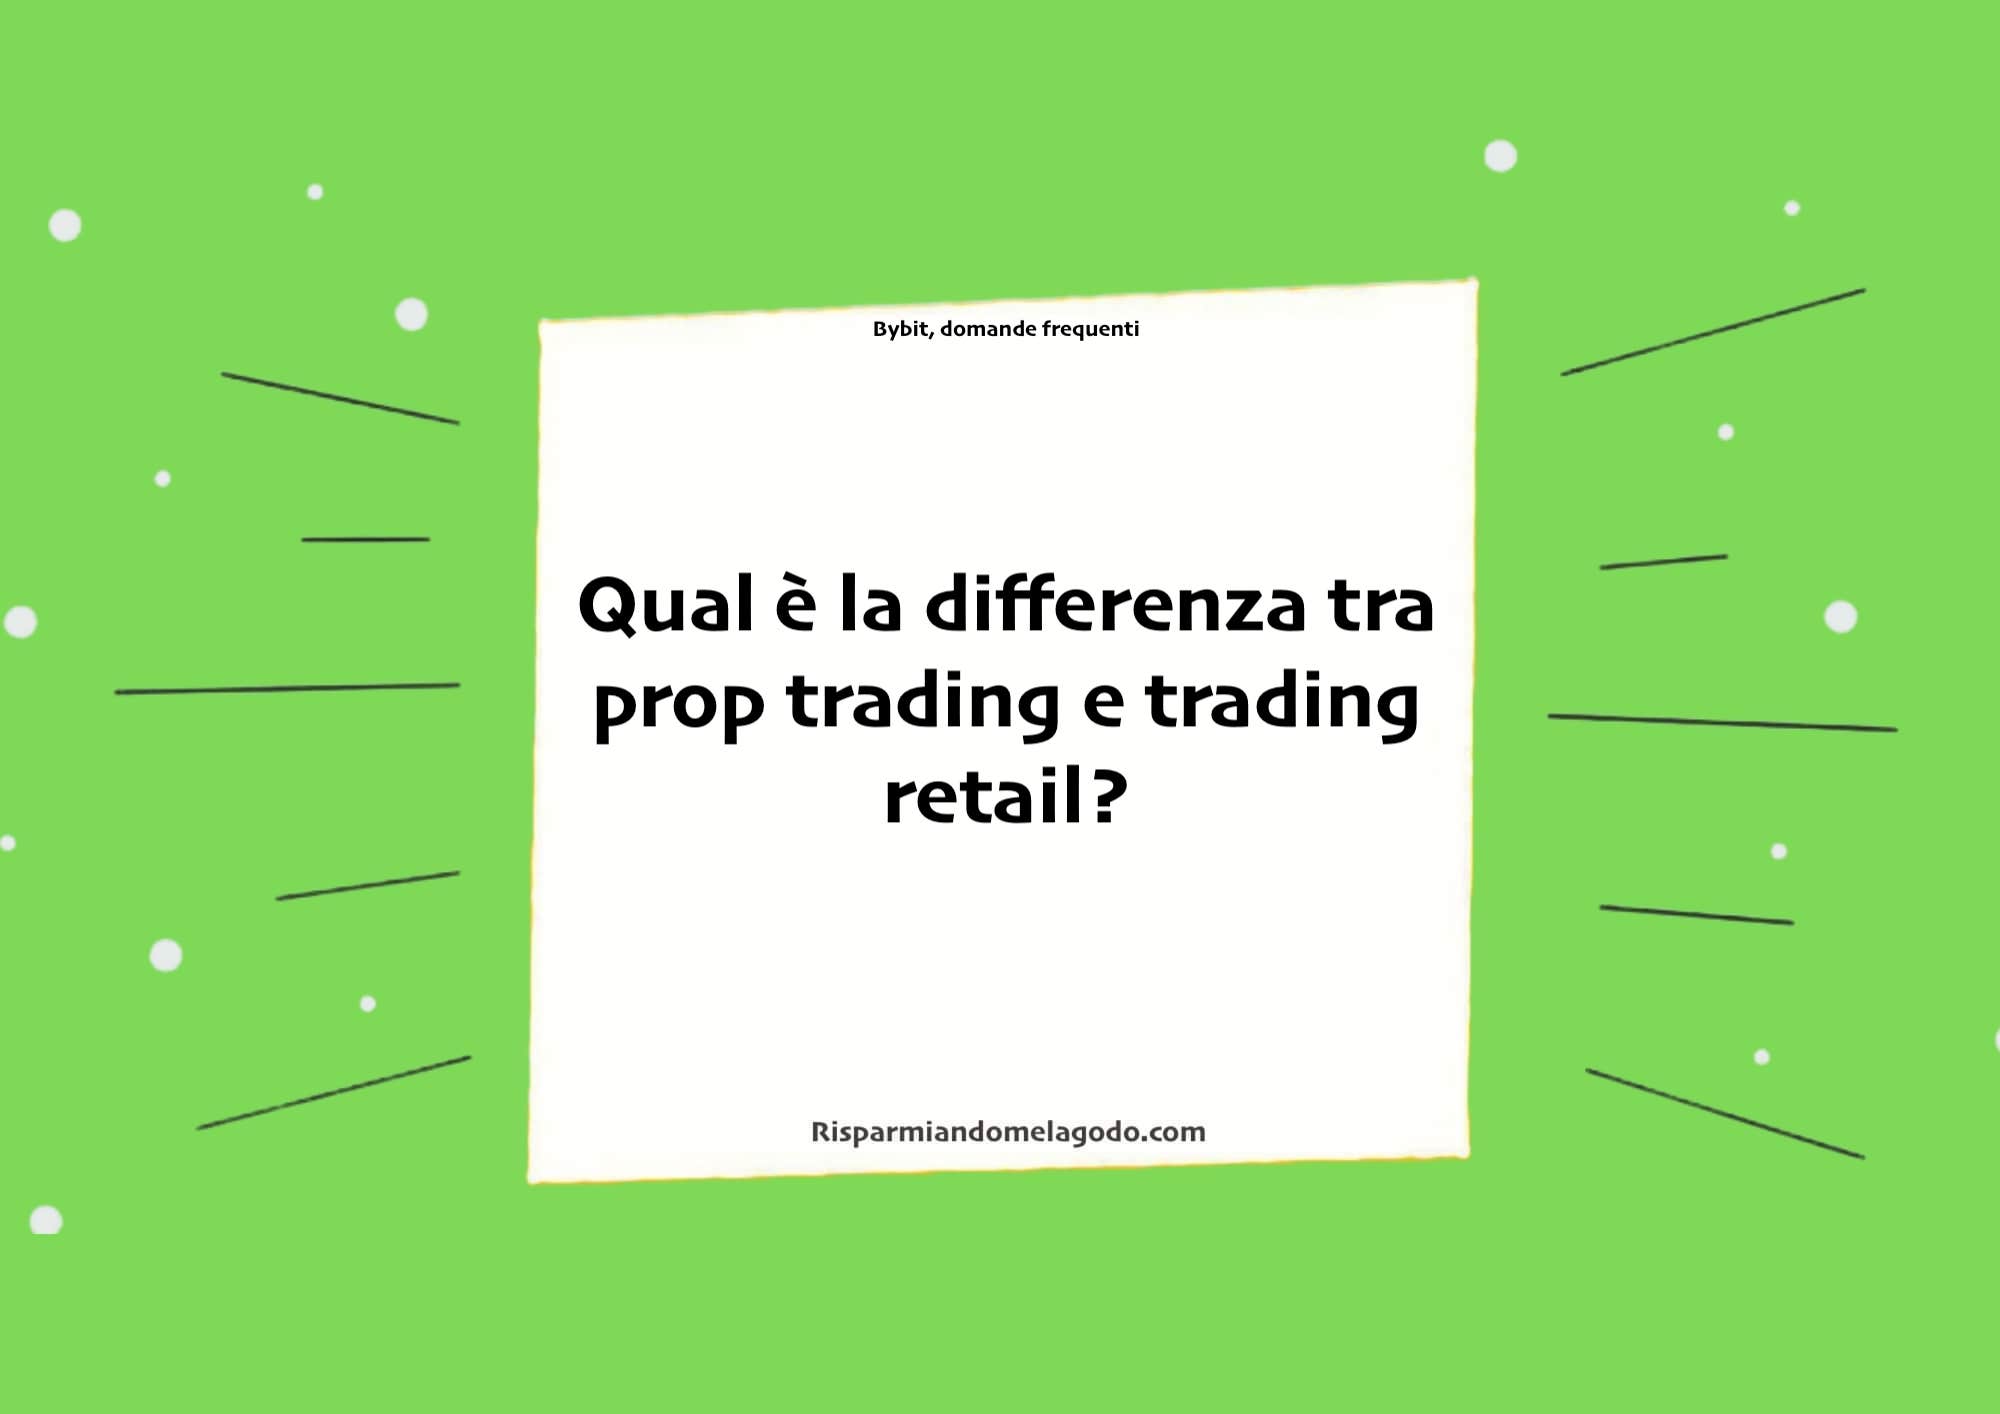 Qual è la differenza tra prop trading e trading retail?